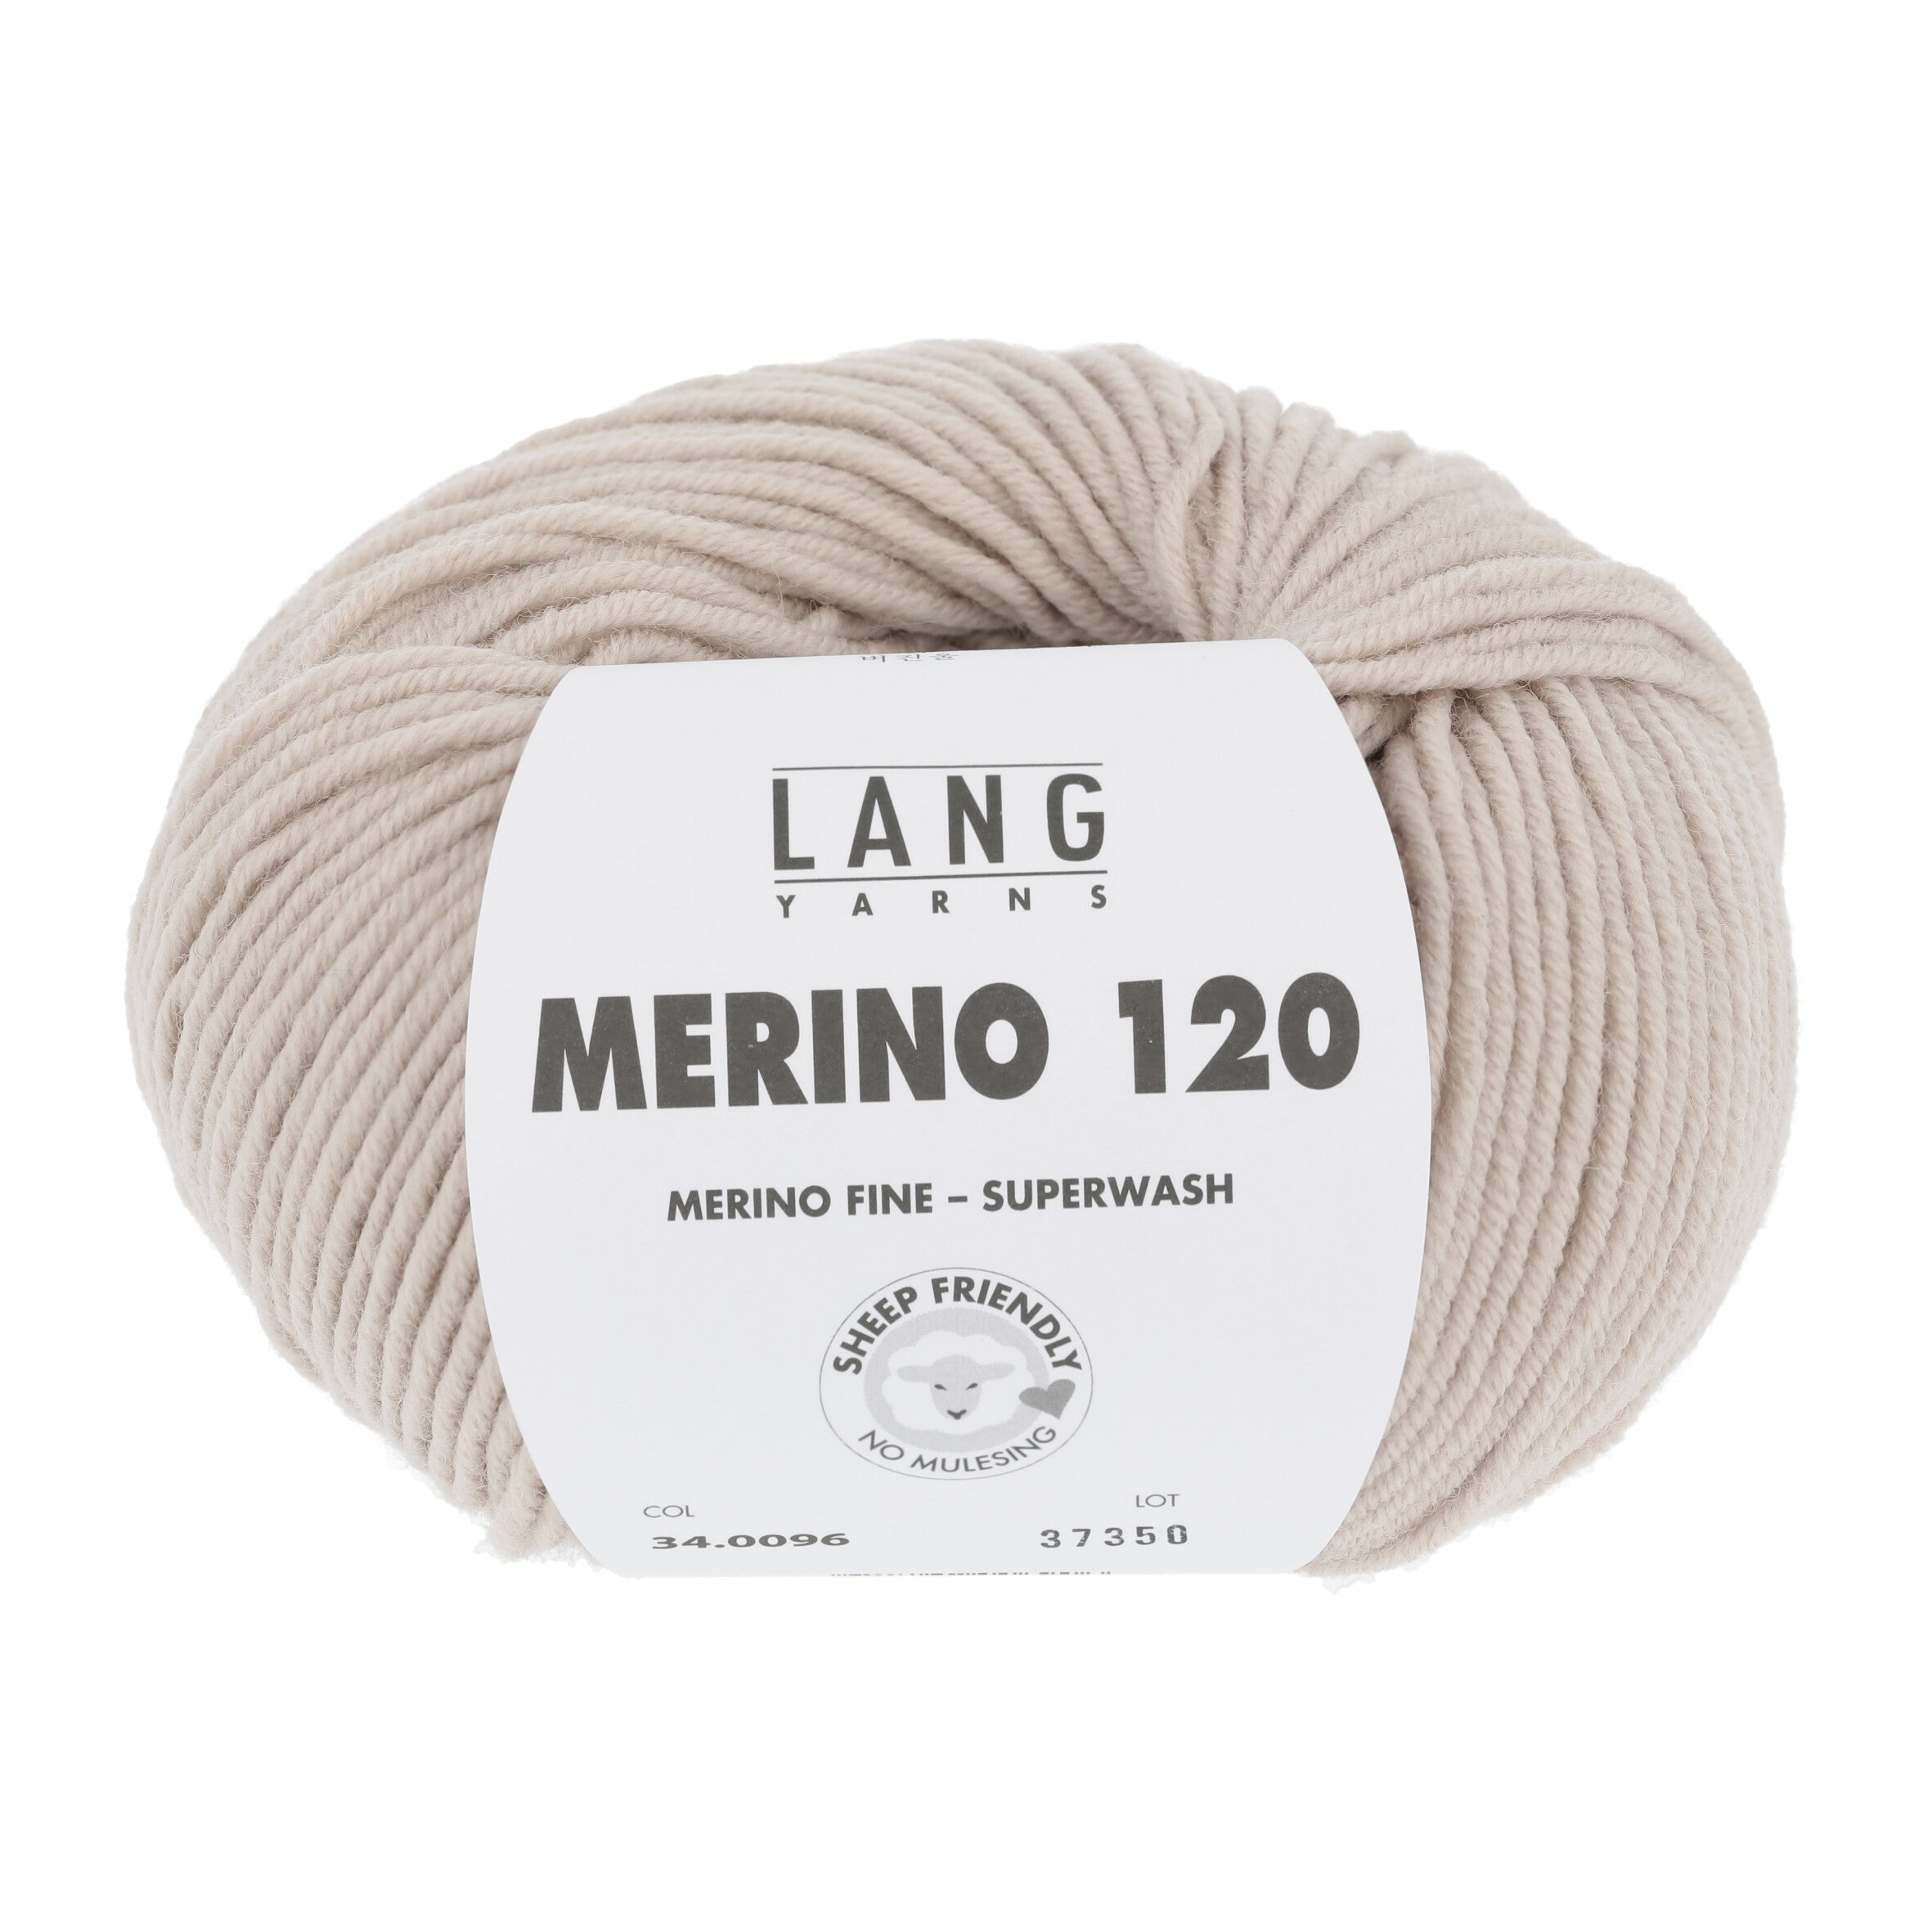 MERINO 120 von LANG YARNS jetzt online kaufen bei OONIQUE